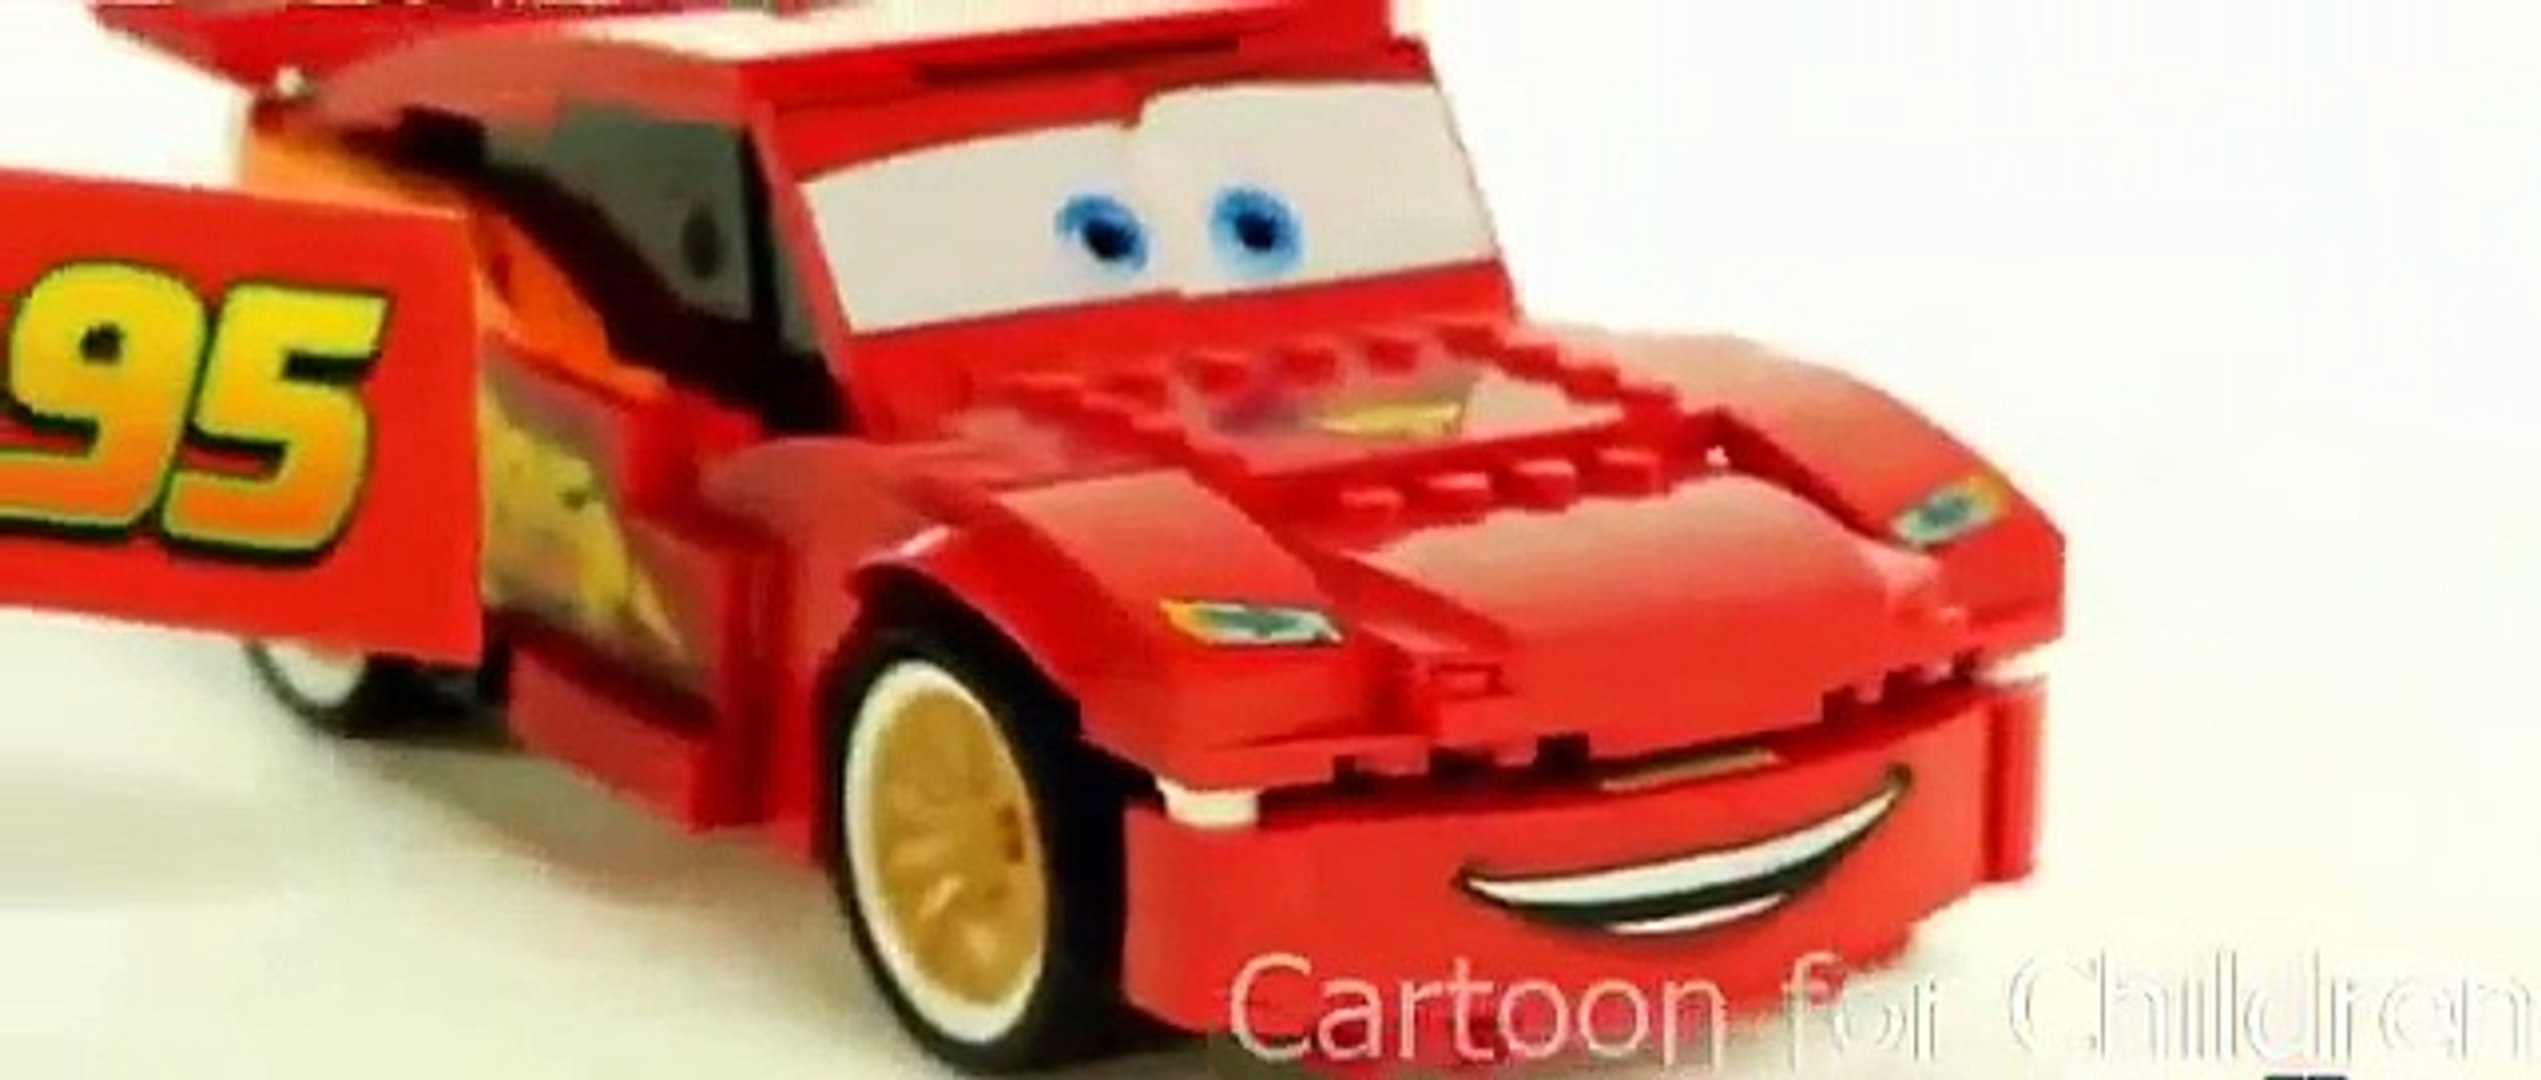 ⁣Developing cartoon about cars cartoon children Cartoon Cars Cars 2 Cars 2